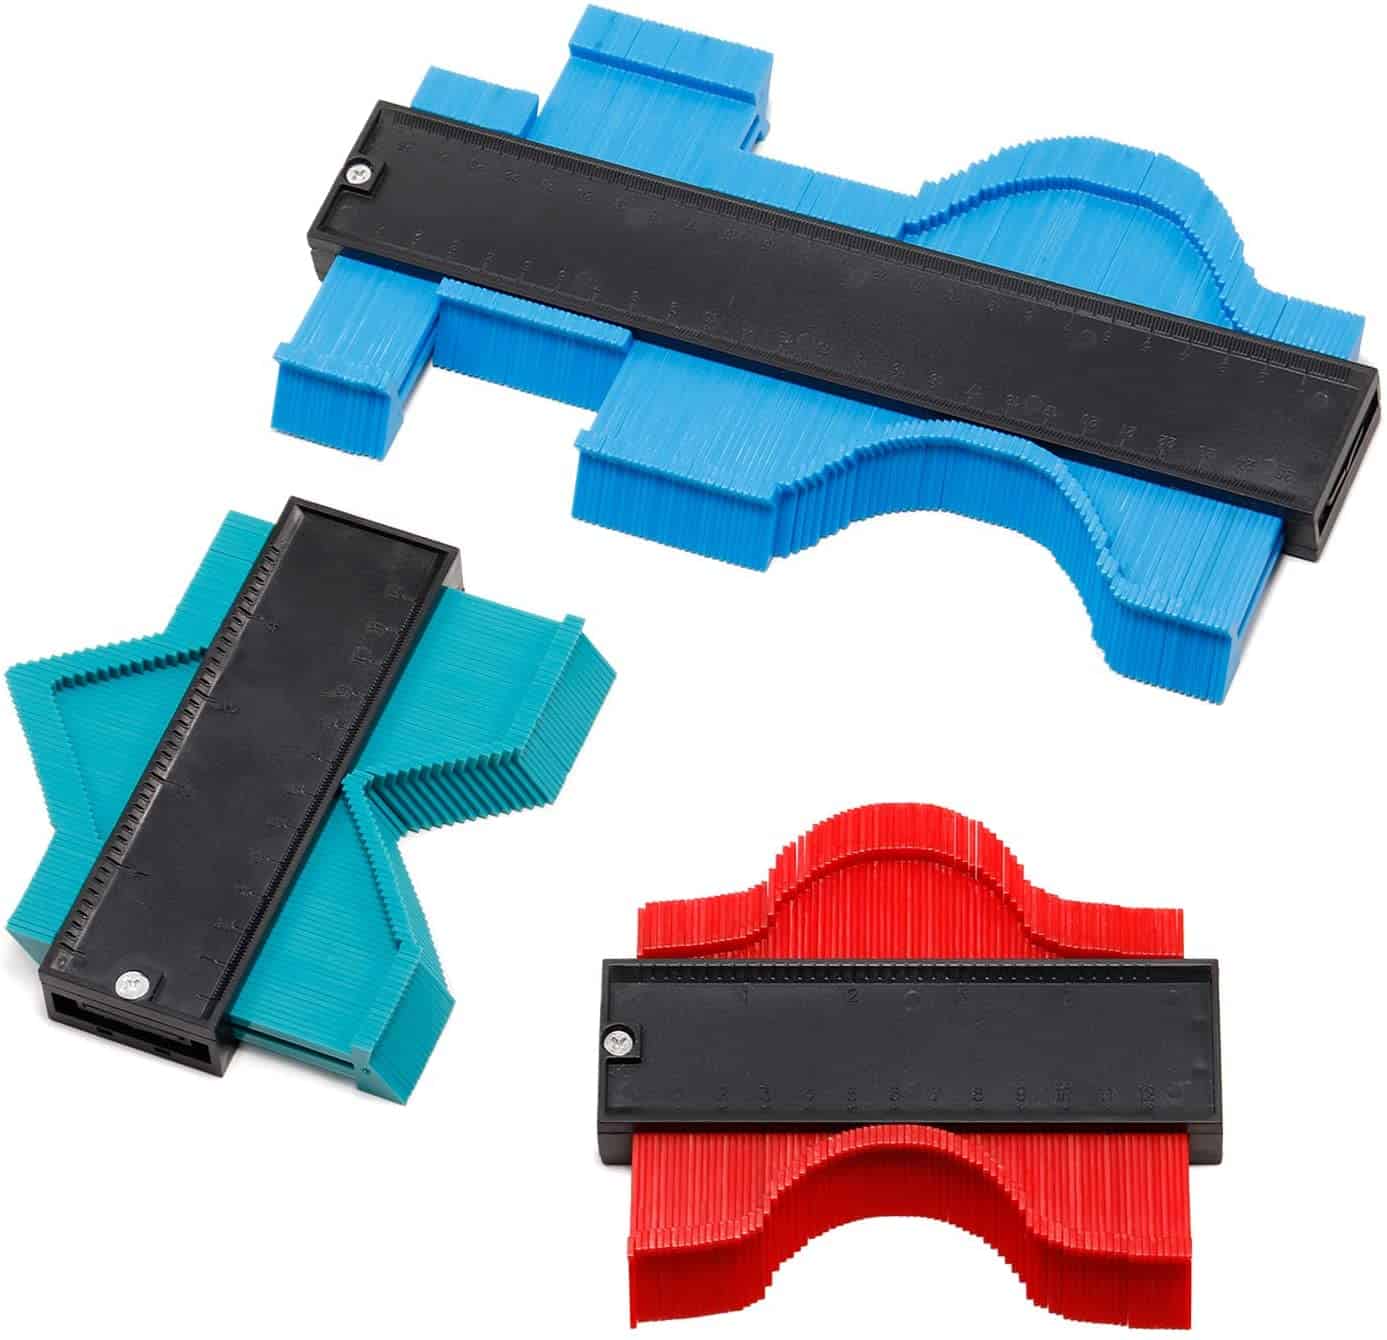 Contourmeterset met de beste prijs-kwaliteitverhouding - NadaKin Plastic Shape Duplicator Kit 3 stuks